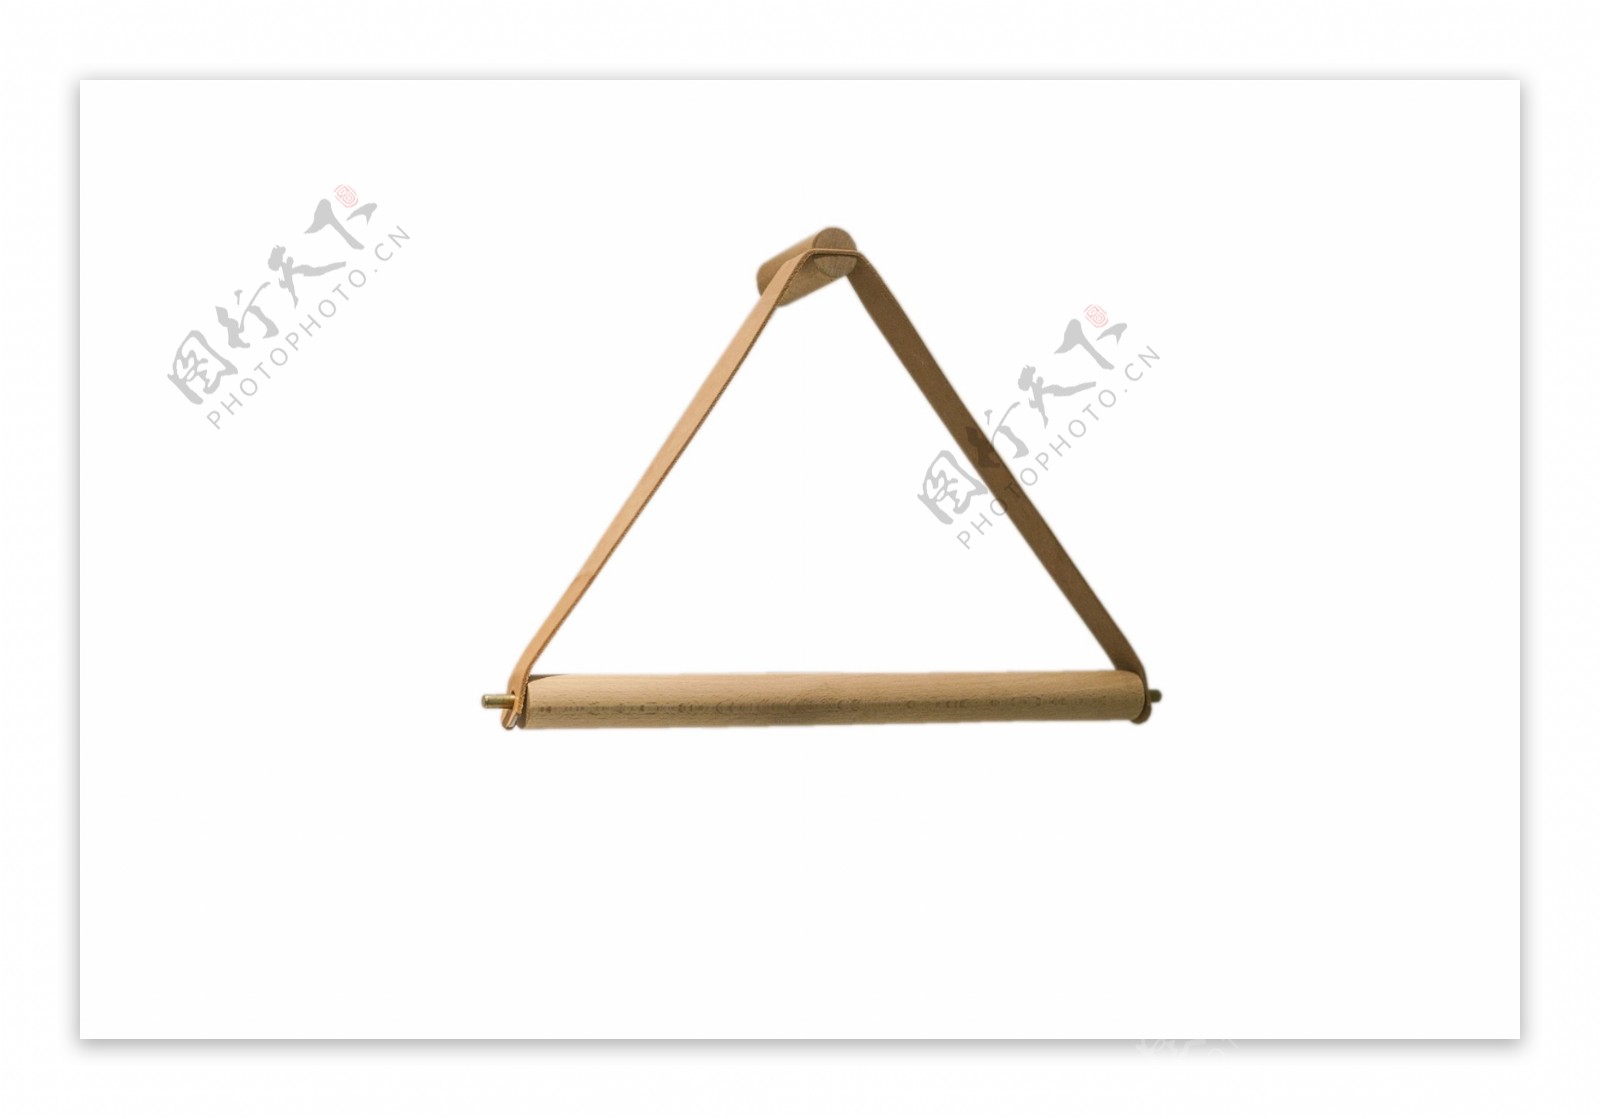 木质三角形简单衣架png素材